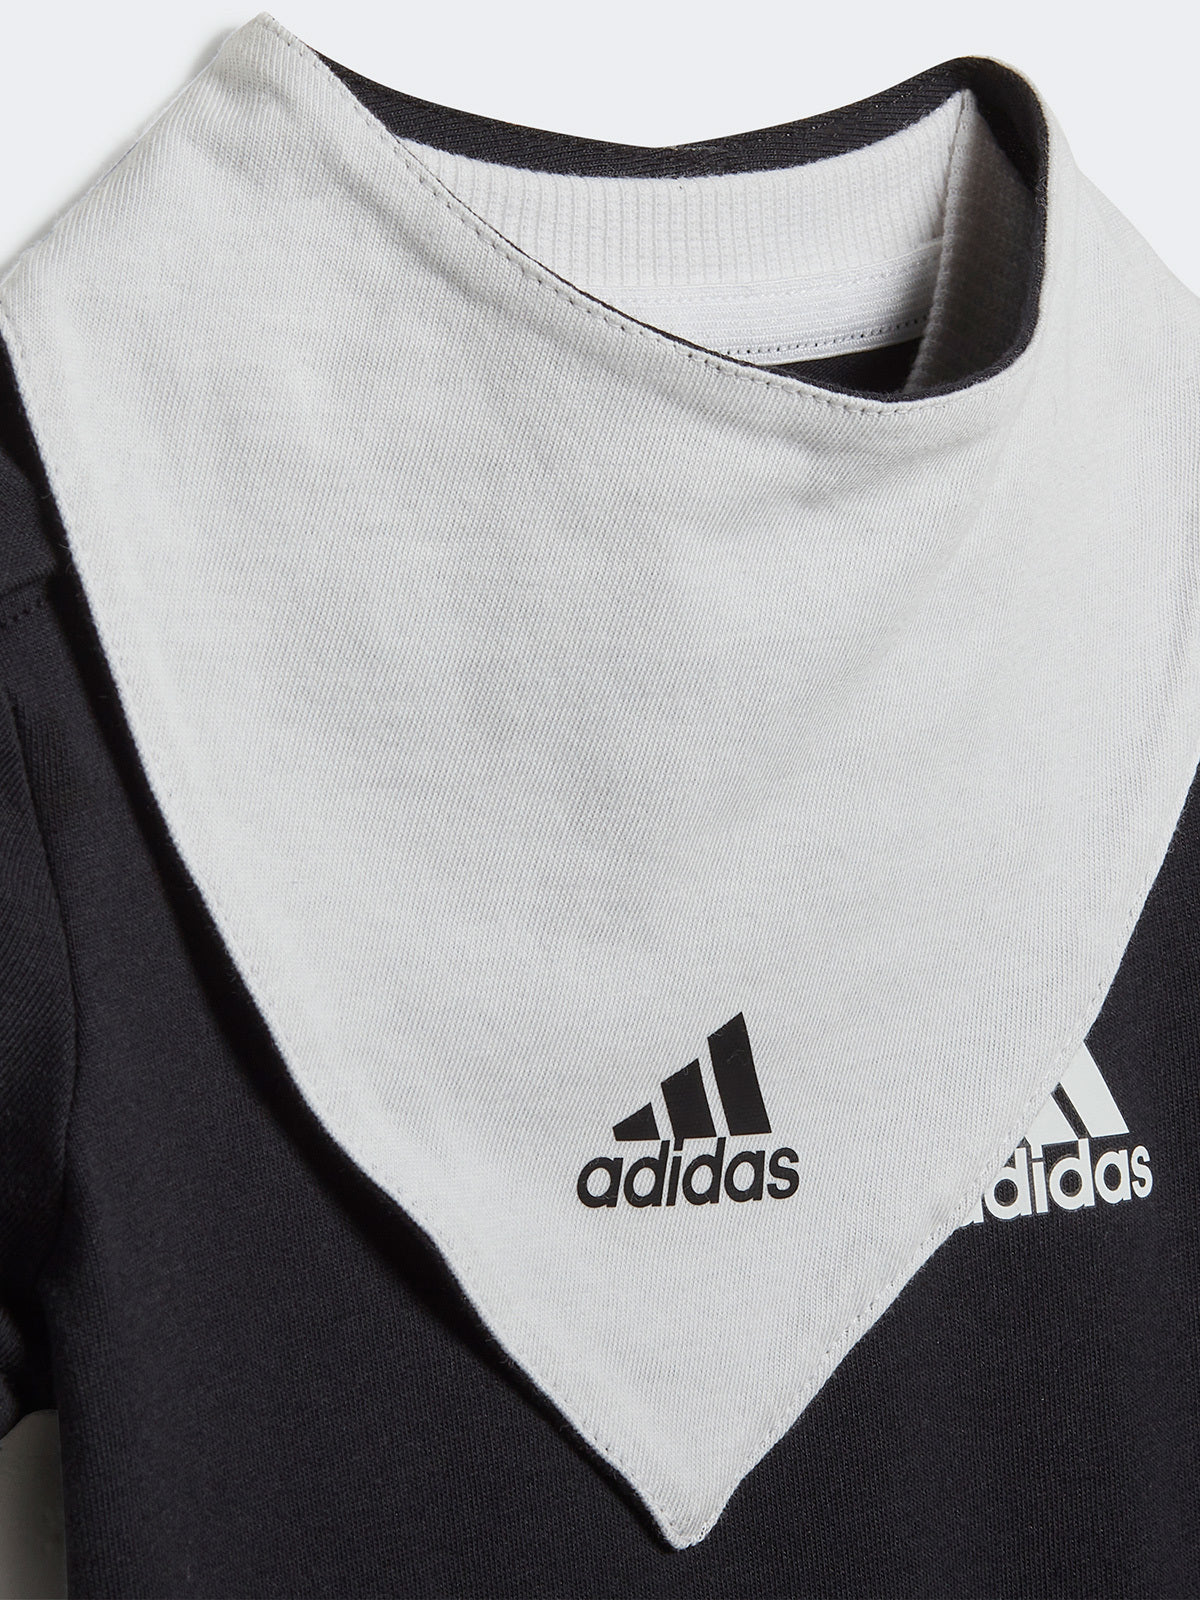 בגד גוף סינר עם לוגו מודפס / תינוקות יוניסקס- adidas performance|אדידס פרפורמנס